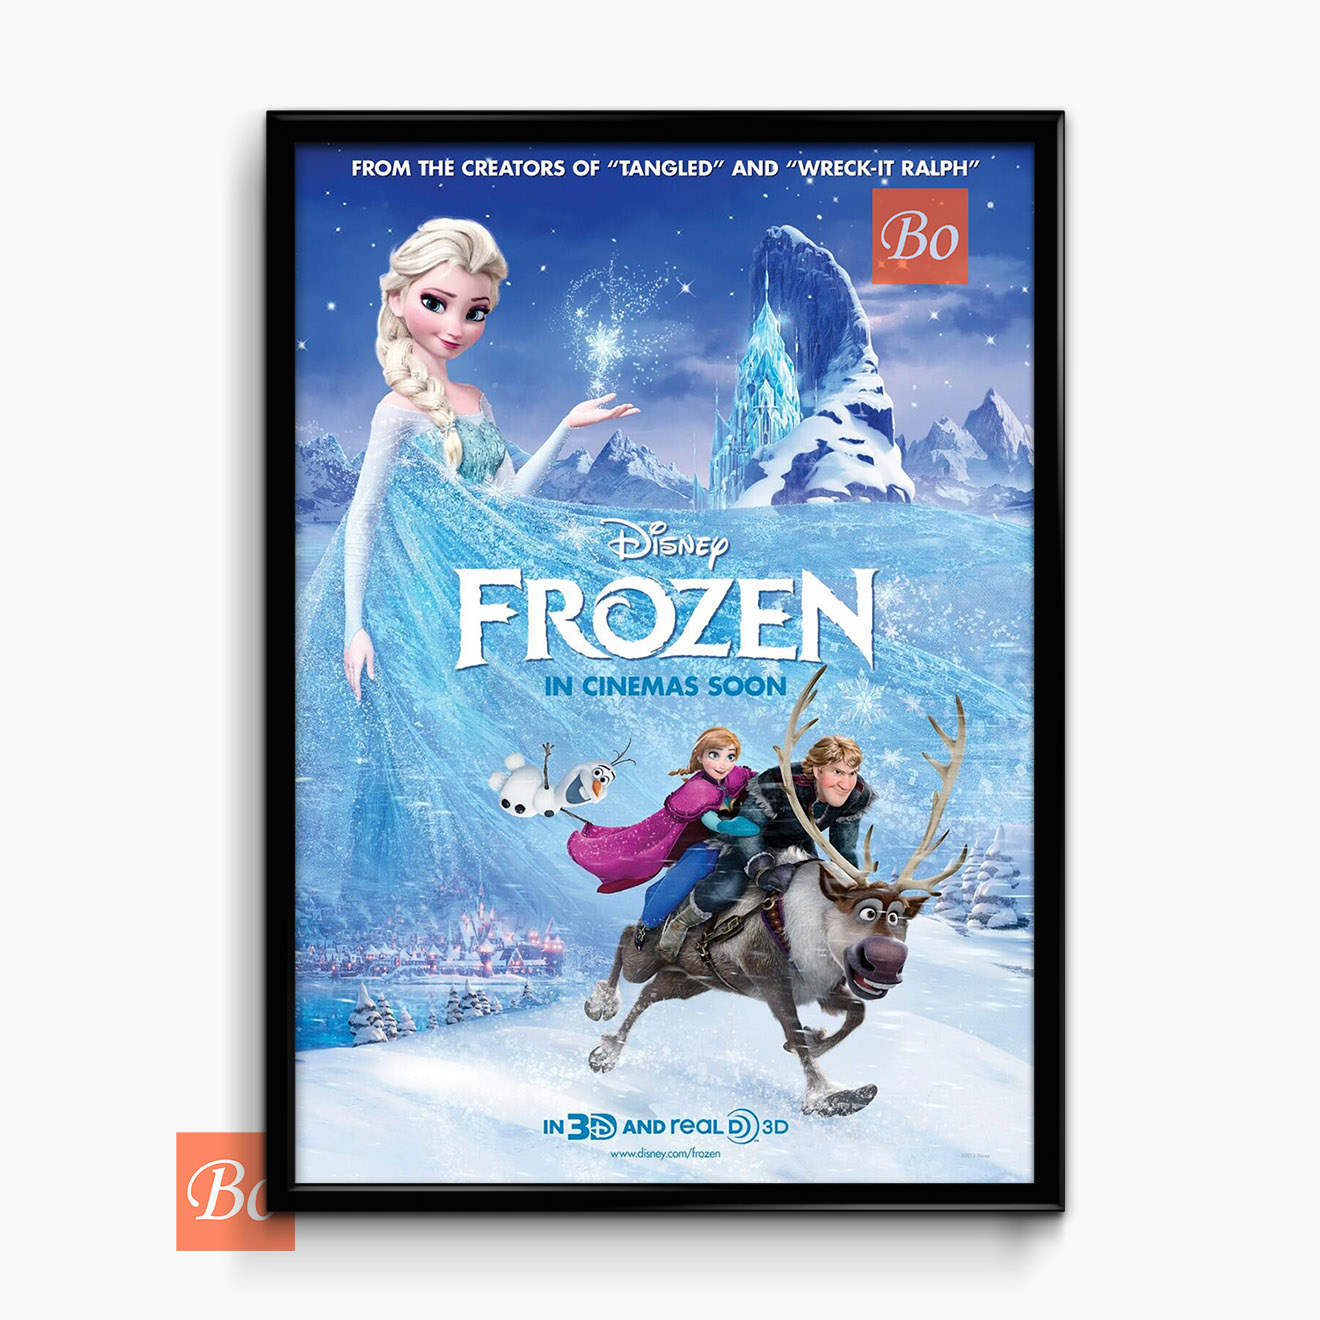 冰雪奇缘 Frozen 电影 (2013)